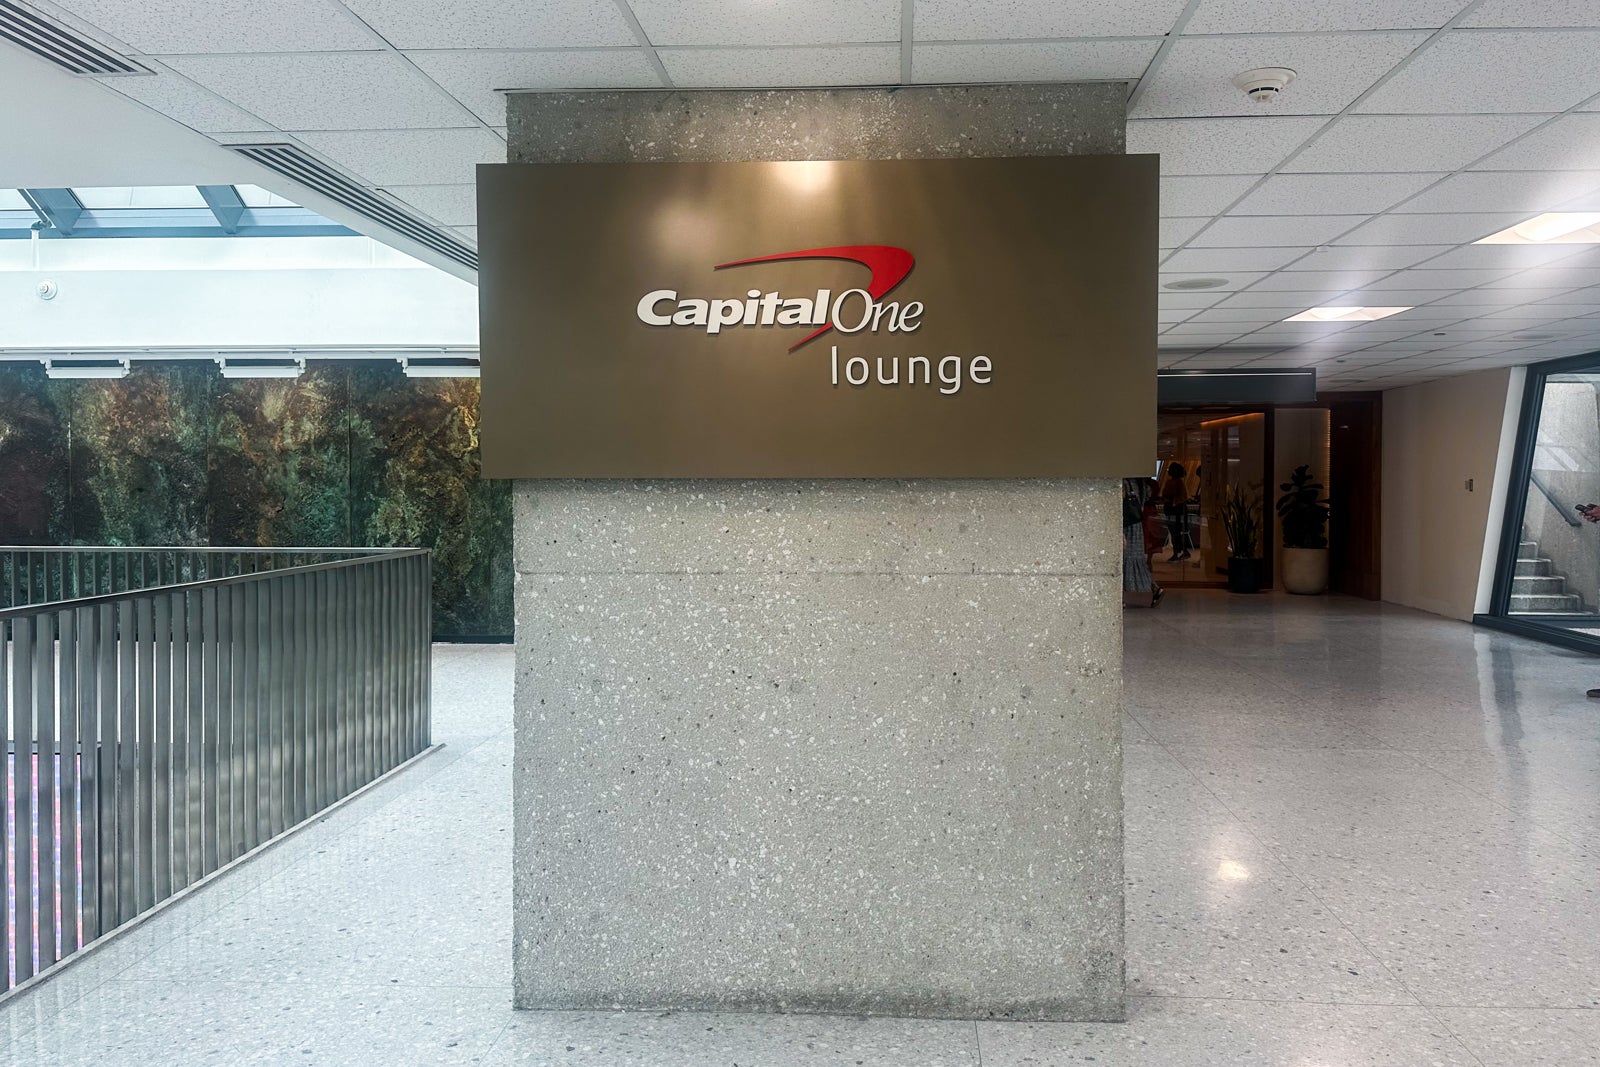 Capital One lounge logo IAD